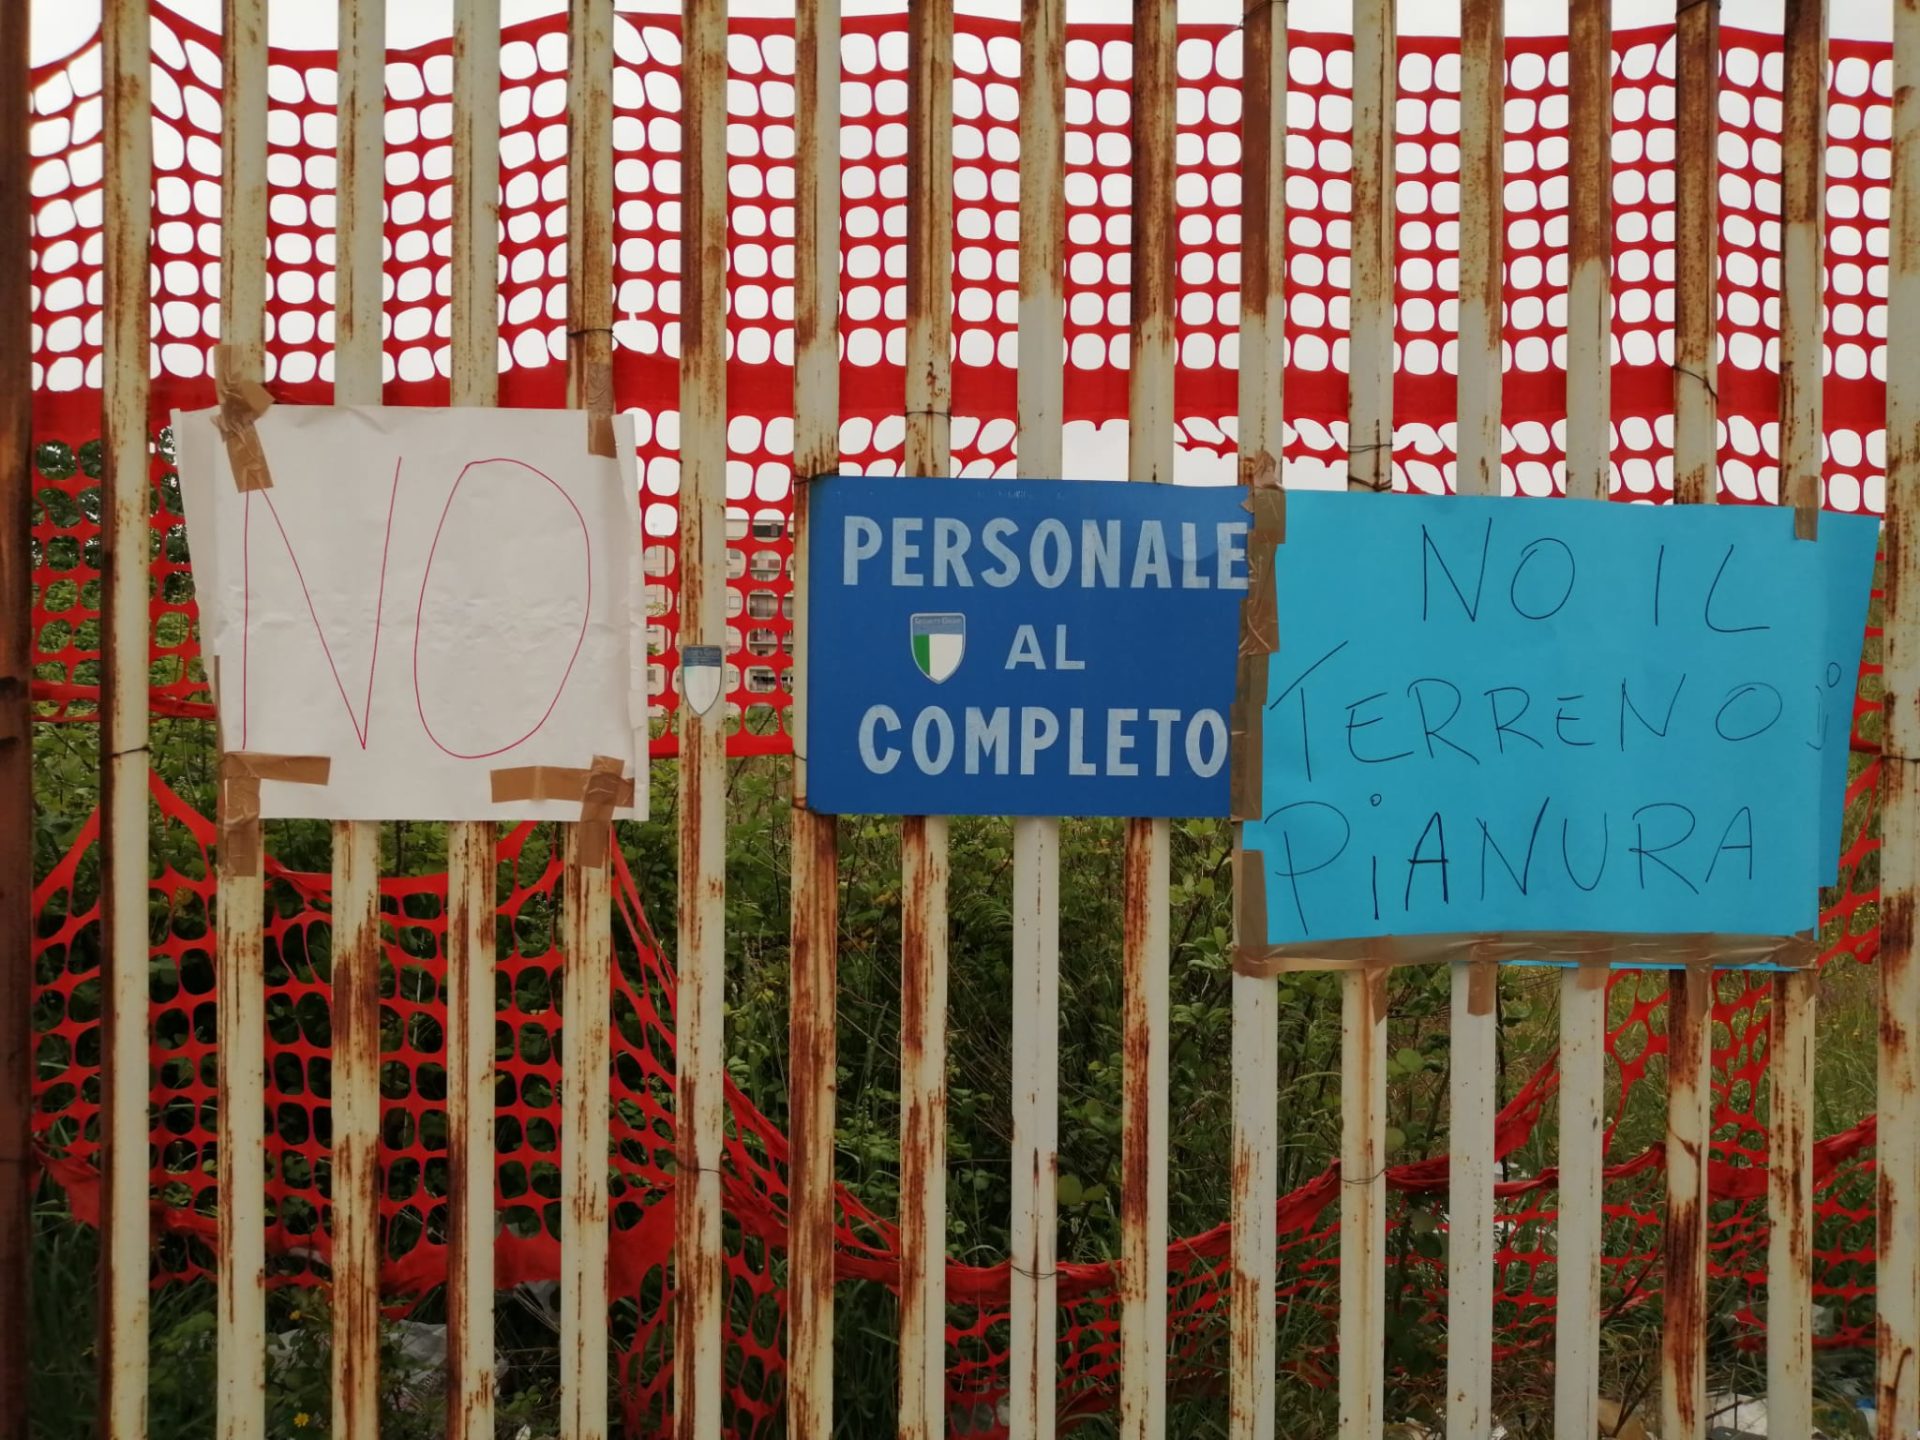 Il terreno di Pianura a Ponticelli: la protesta di comitati e cittadini